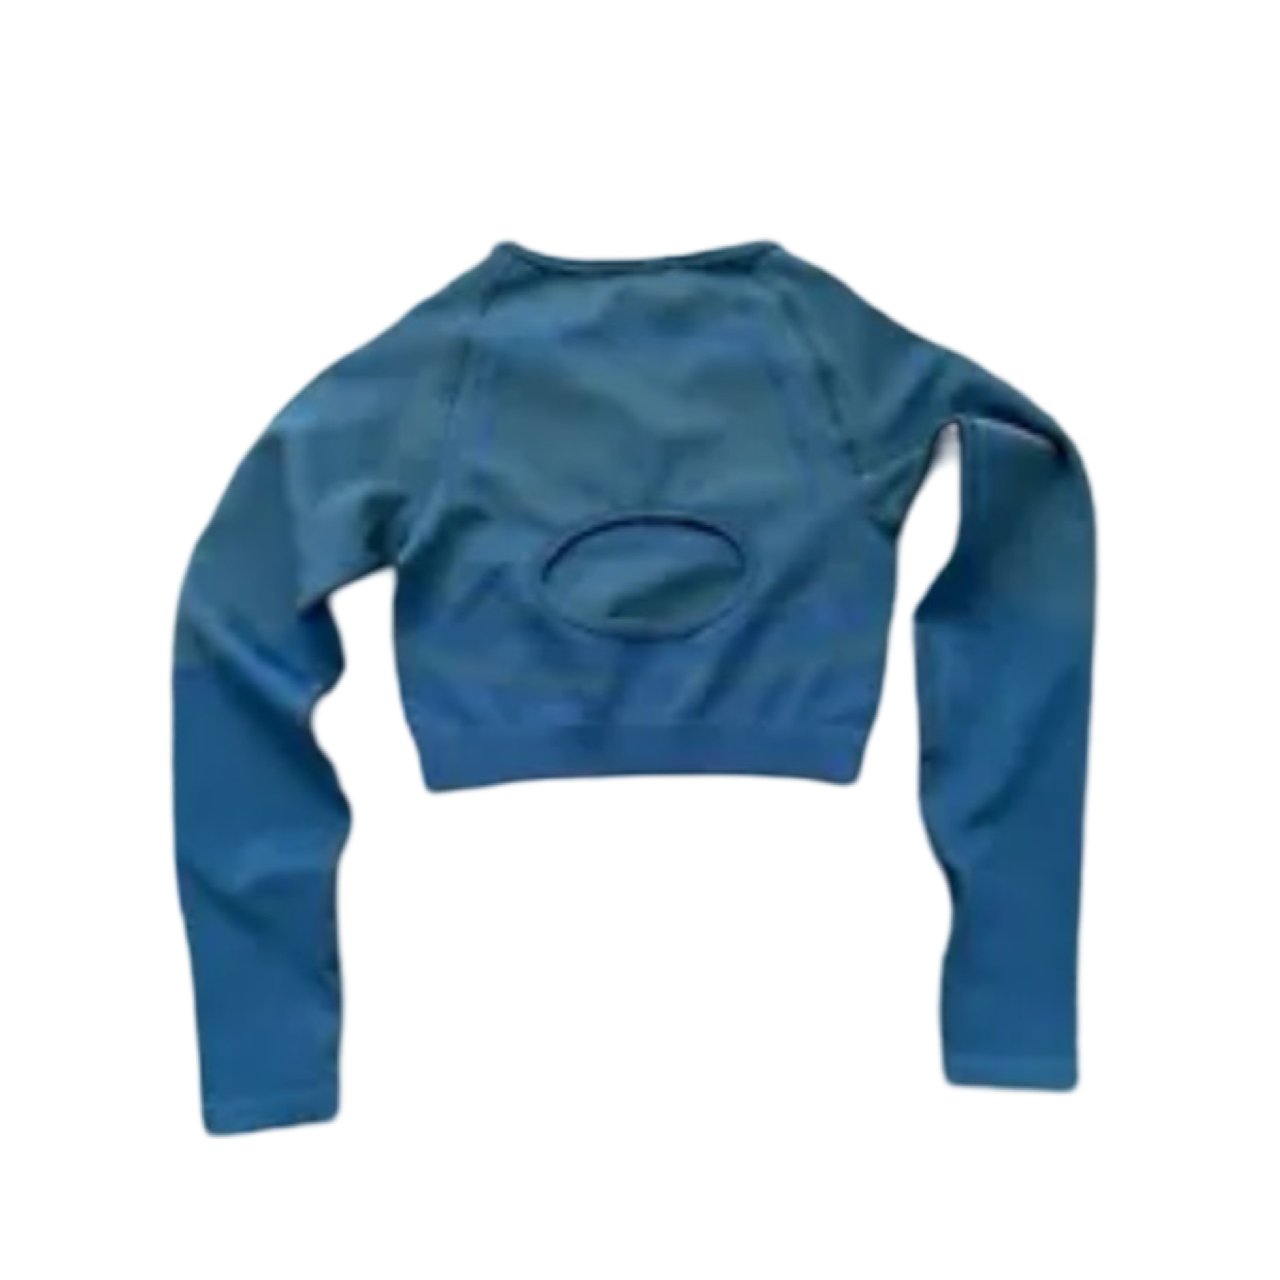 Gymshark Vital Seamless Crop Top in Blue - Soul and Sense Streetwear